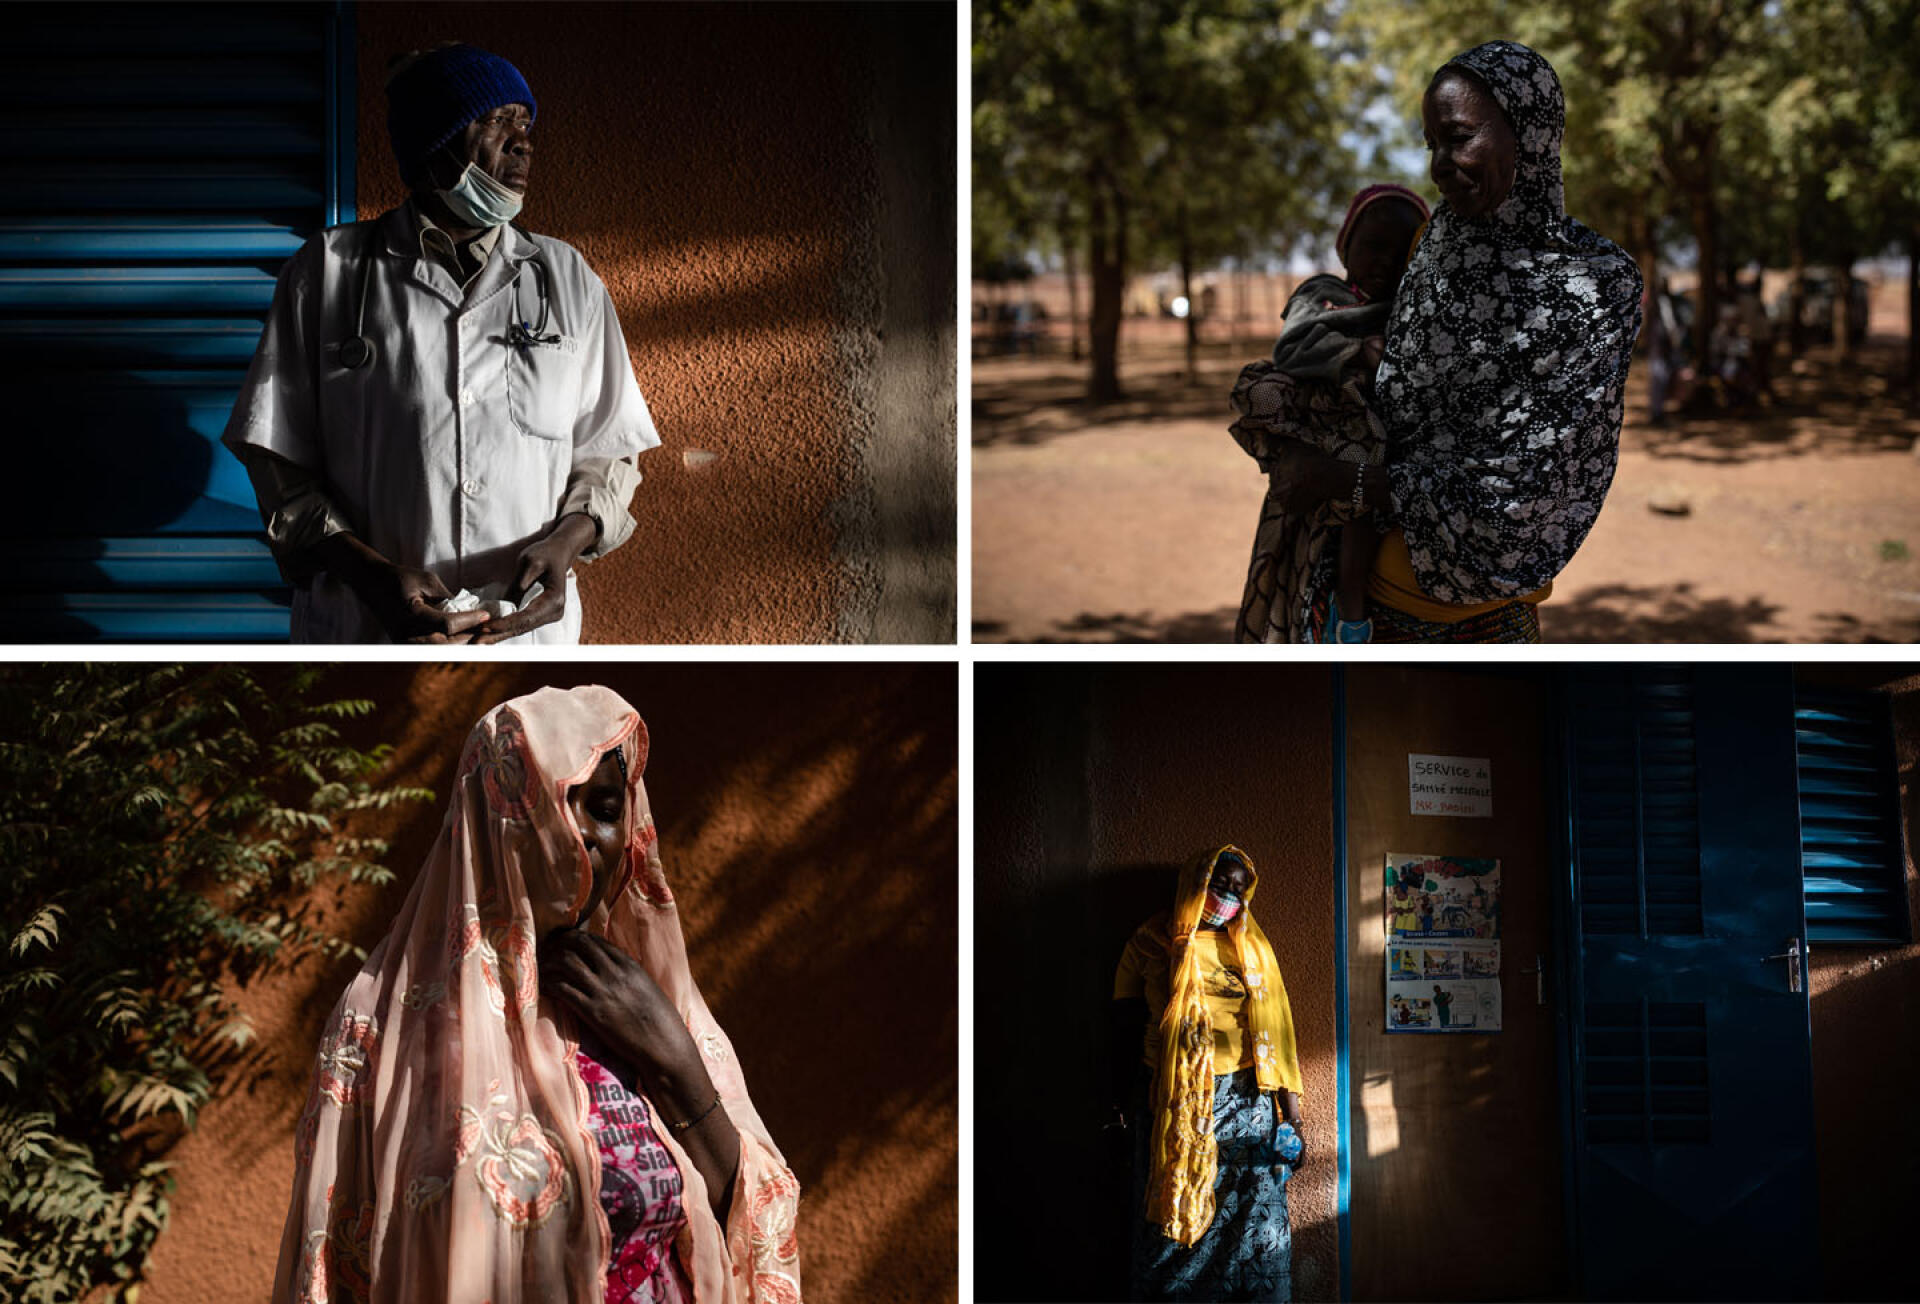 De gauche à droite et de haut en bas : 1 - Joseph Badini, assistant de santé mentale au centre médical de Kongoussi, dans le centre-nord du Burkina Faso. 2 - Maïmouna (le nom a été changé), 55 ans, est tombée en dépression lorsque que son mari l’a abandonnée à la suite des violences dans son village, Kiella. Seule, dans une situation précaire, avec désormais 13 enfants à sa charge, elle a pensé mettre fin à ses jours. 3 - Asseta (le nom a été changé), 28 ans, souffre de « dépression sévère » depuis l’attaque de son village par des hommes armés. 4 - Au centre médical de Kongoussi, devant le bureau de l’assistant de santé mentale Joseph Badini. Les 10 et 12 février 2021.